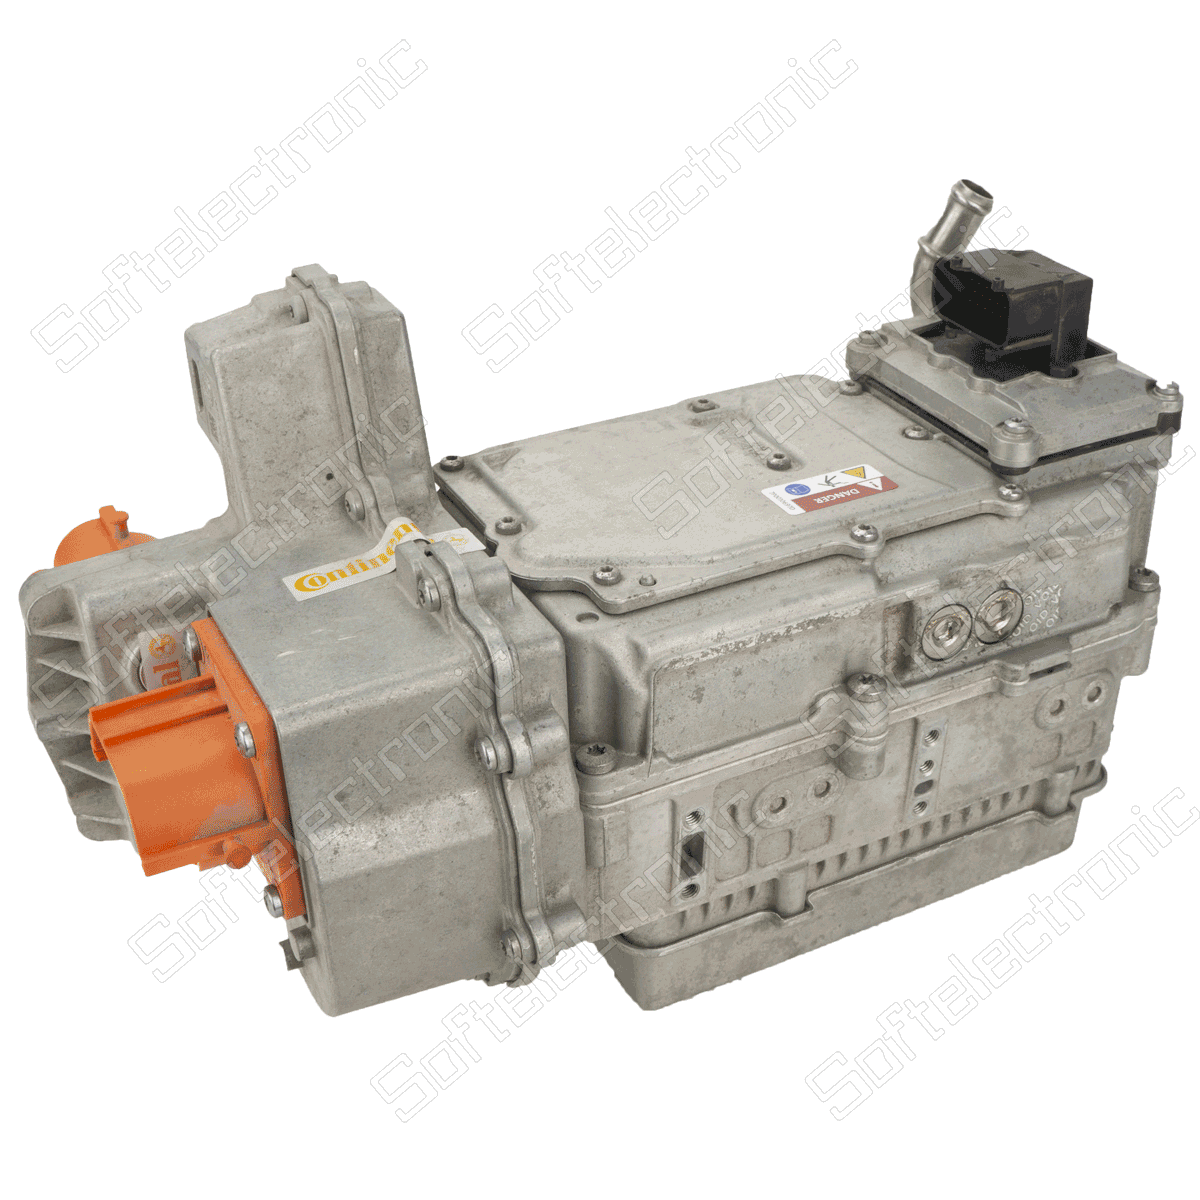 Επισκευή power inverter hybrid high voltage battery Range Rover